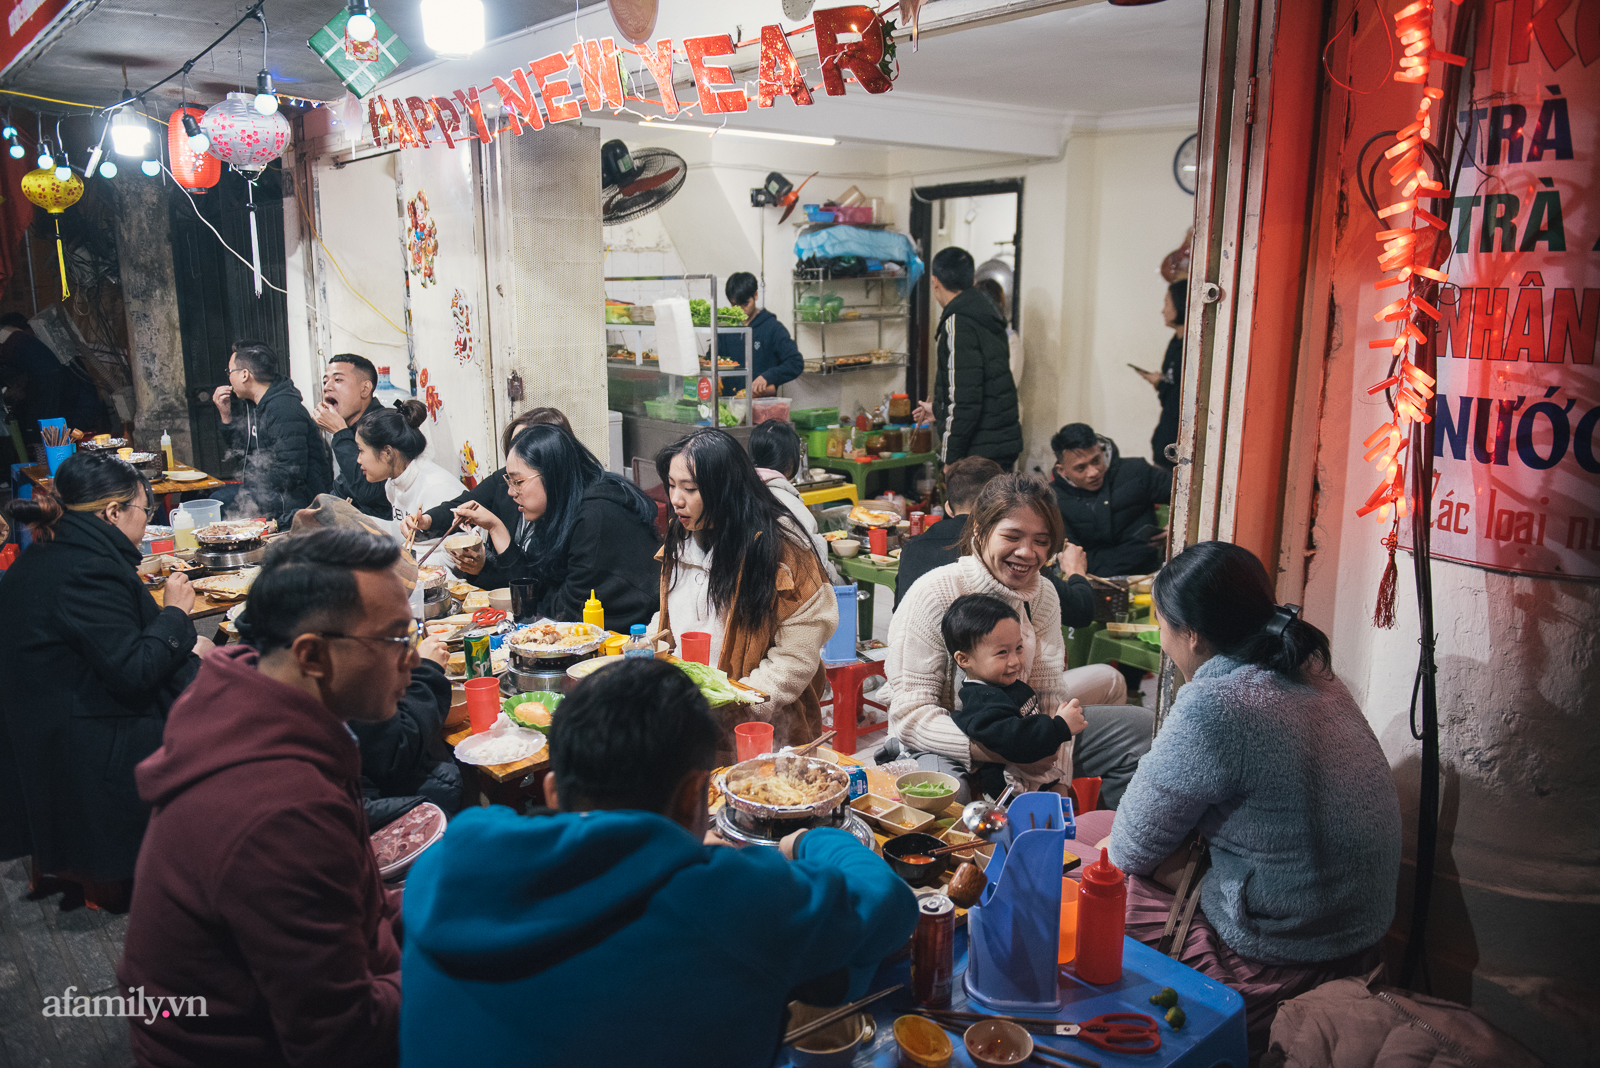 Mùa đông năm nay, cả Hà Nội kéo nhau đi ăn bò nướng chảo gang hay sao mà đi phố nào cũng ngập mùi bơ tỏi  - Ảnh 1.